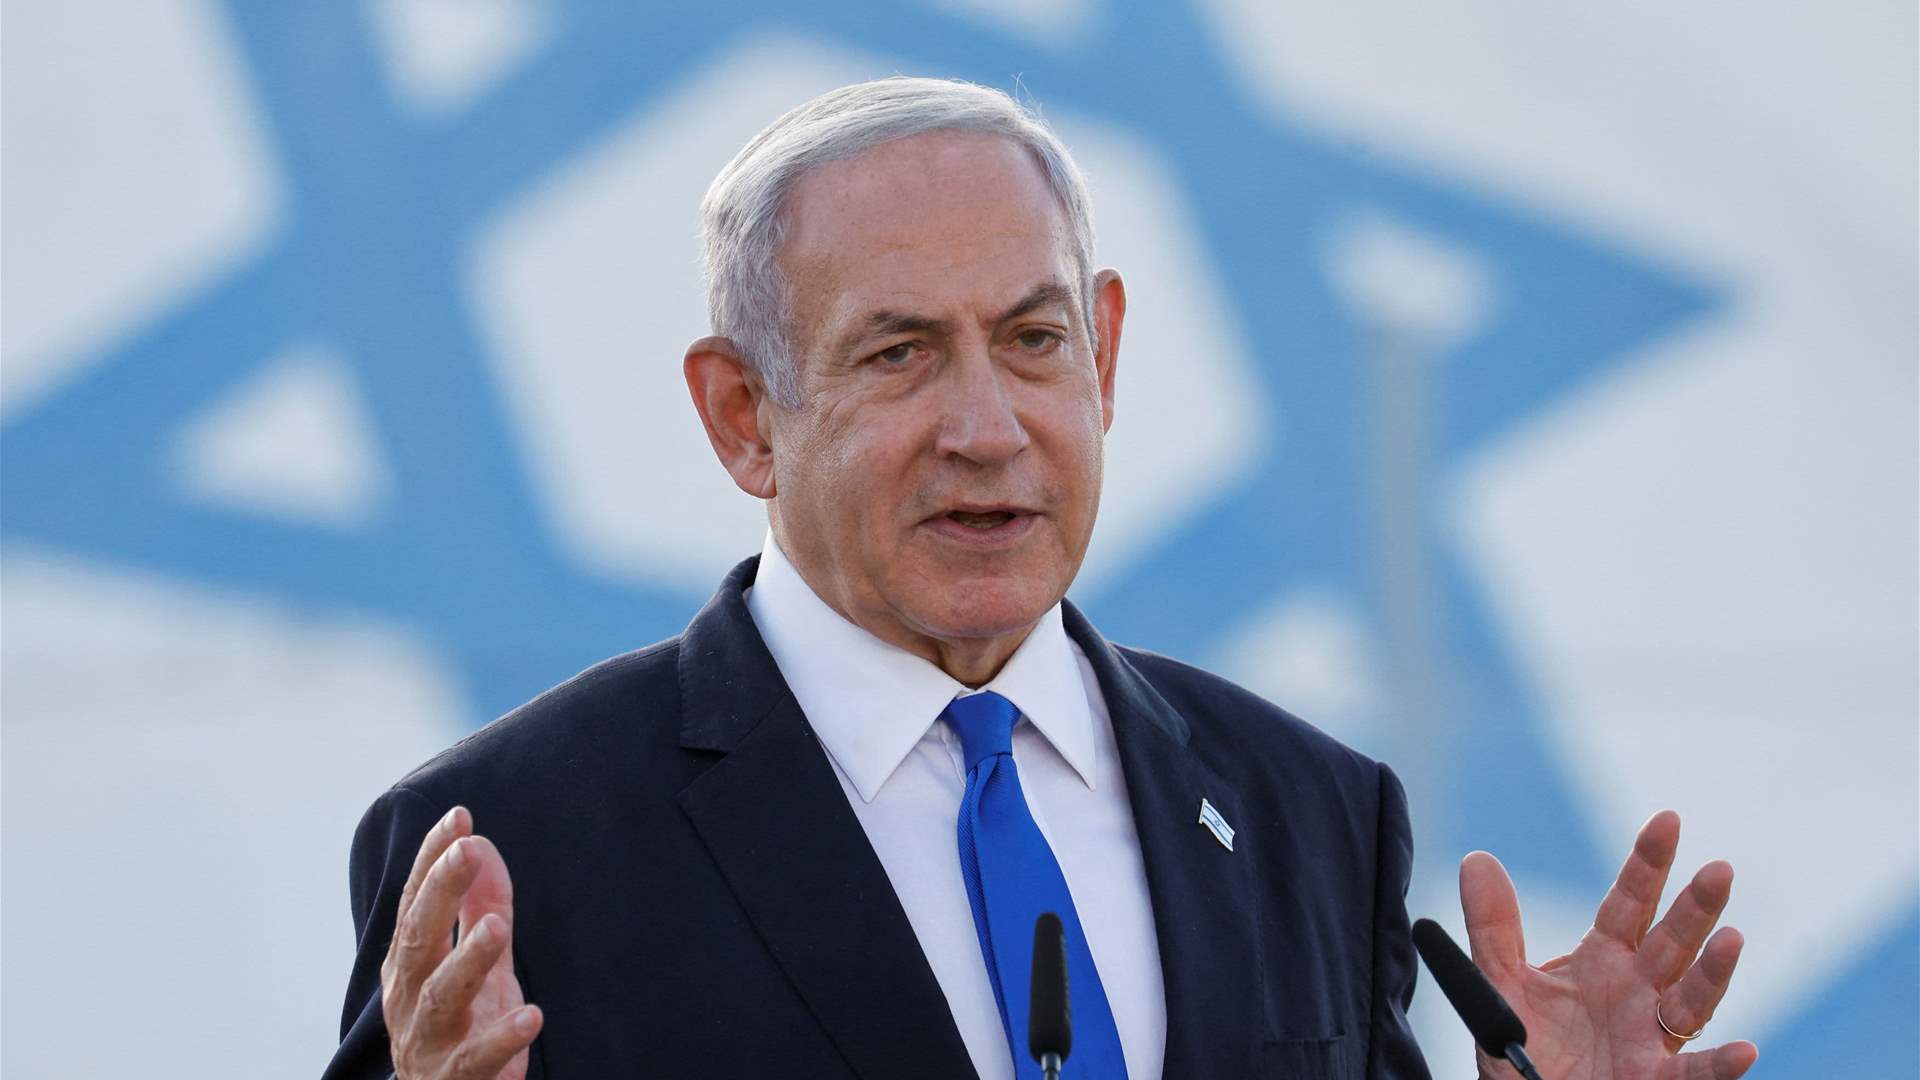 Al Jazeera: Netanyahu says Israel will &#39;demolish Hamas in Gaza&#39;